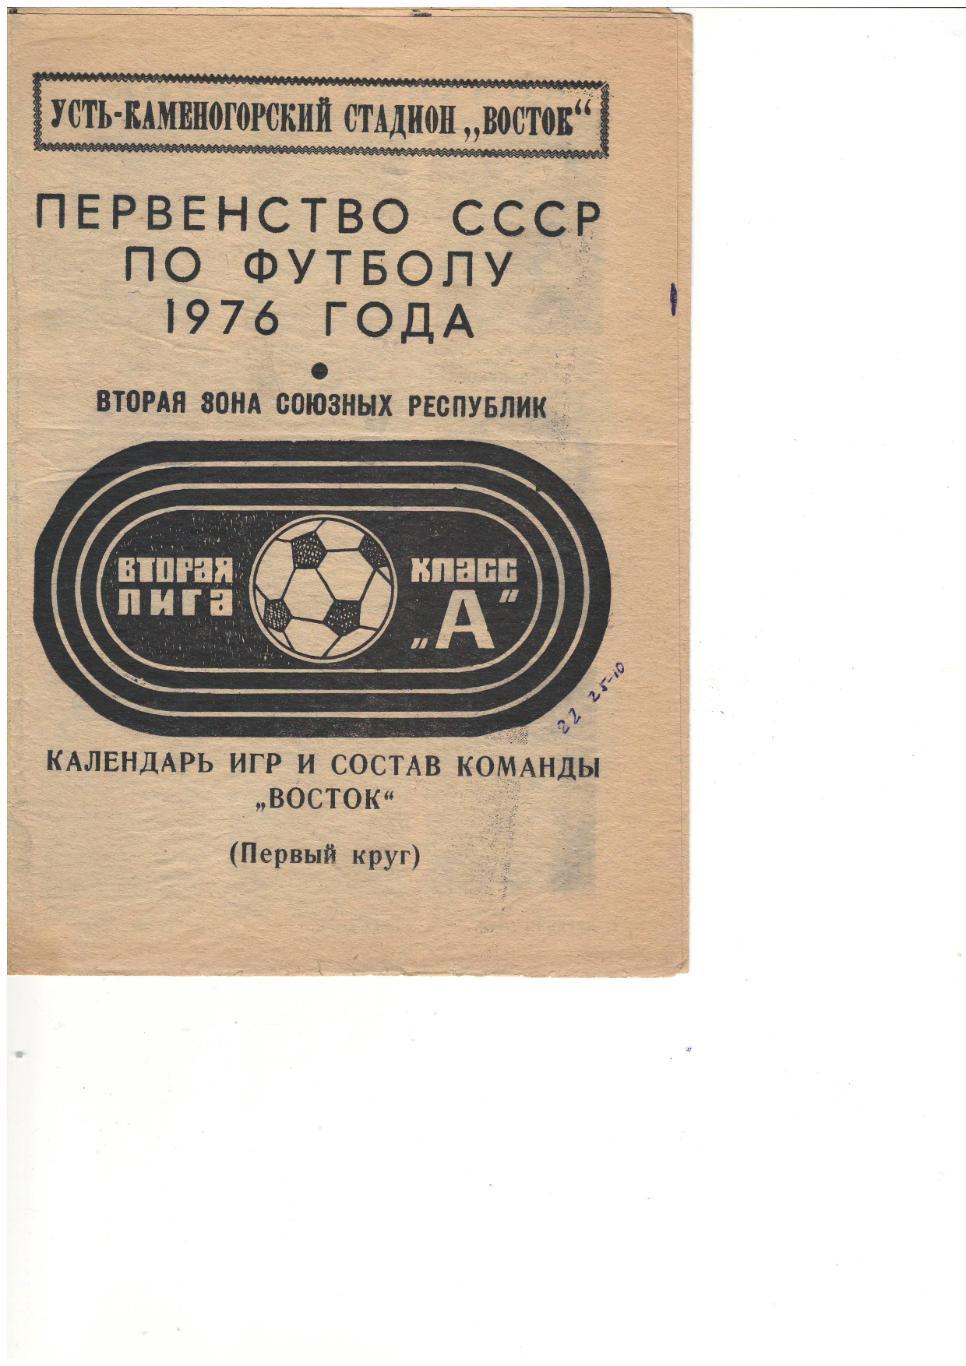 фотобуклет + календарь игр Восток Усть-Каменогорск 1976, первый круг